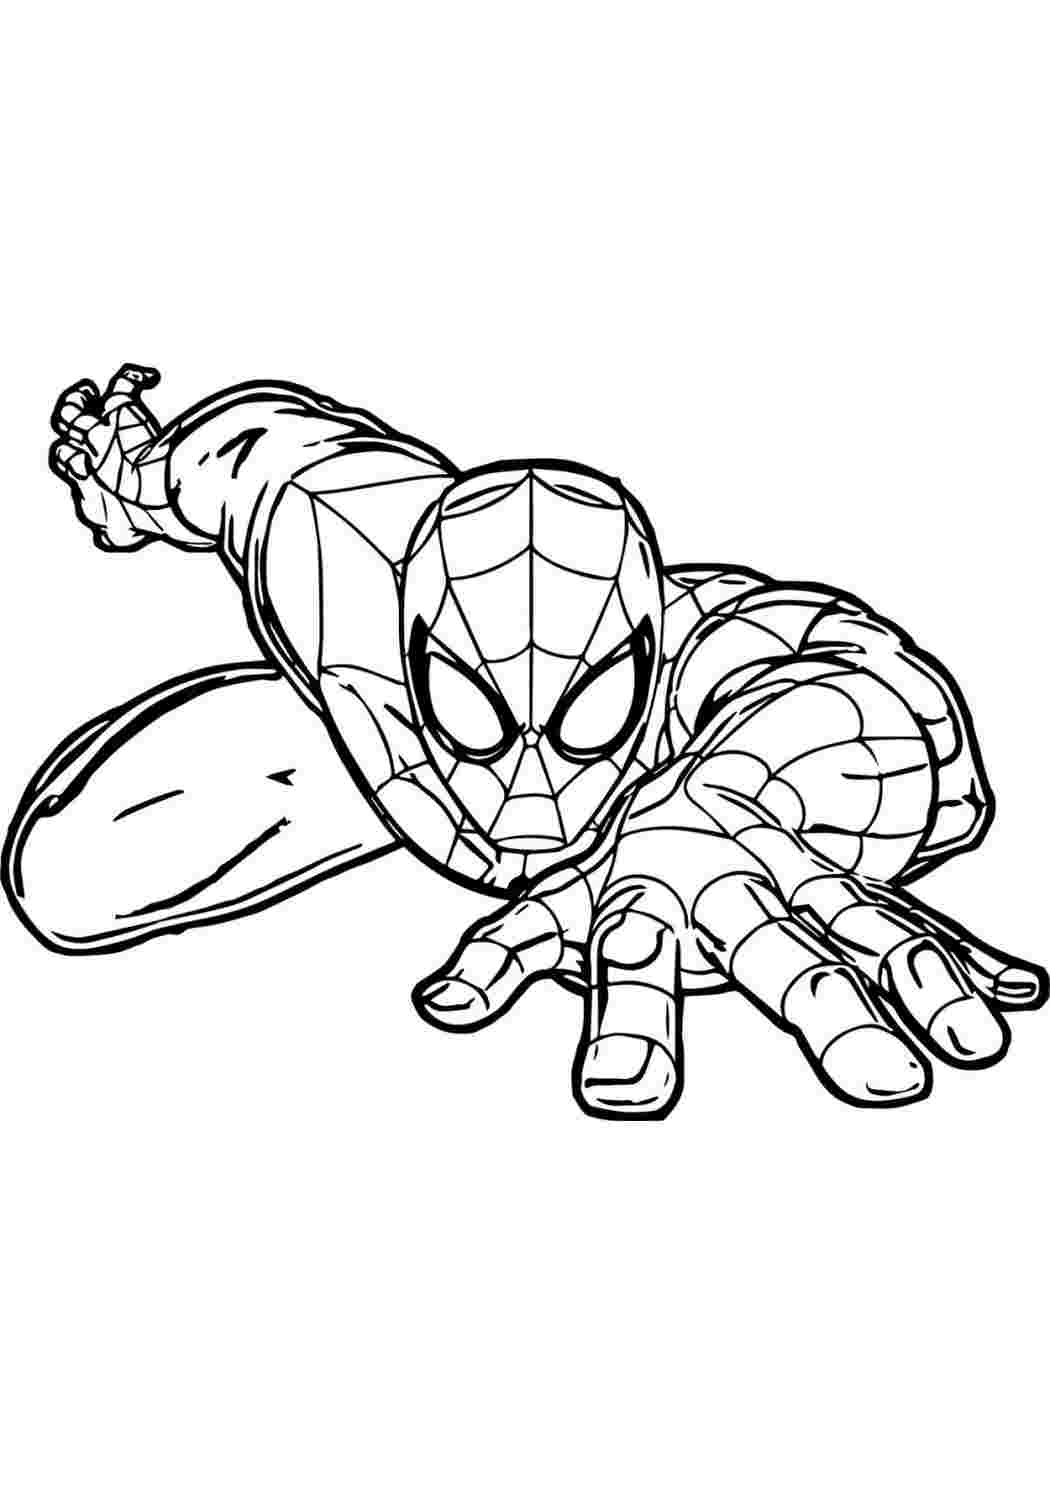 Игра Человек-паук раскраски - играть онлайн бесплатно